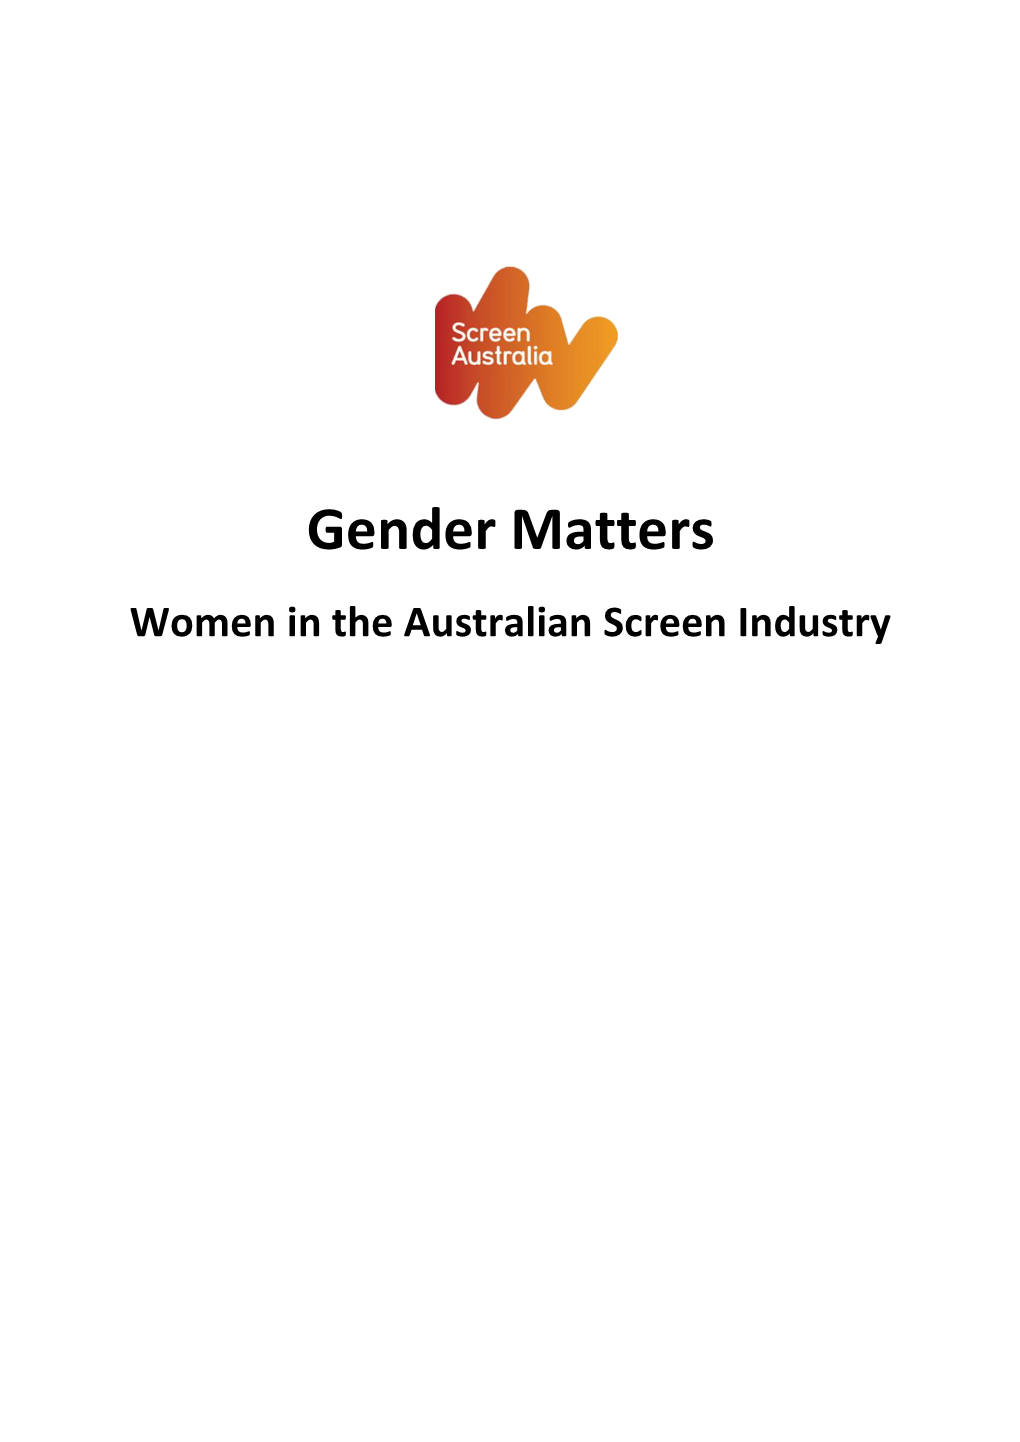 Gender Matters – Women in the Australian Screen Industry